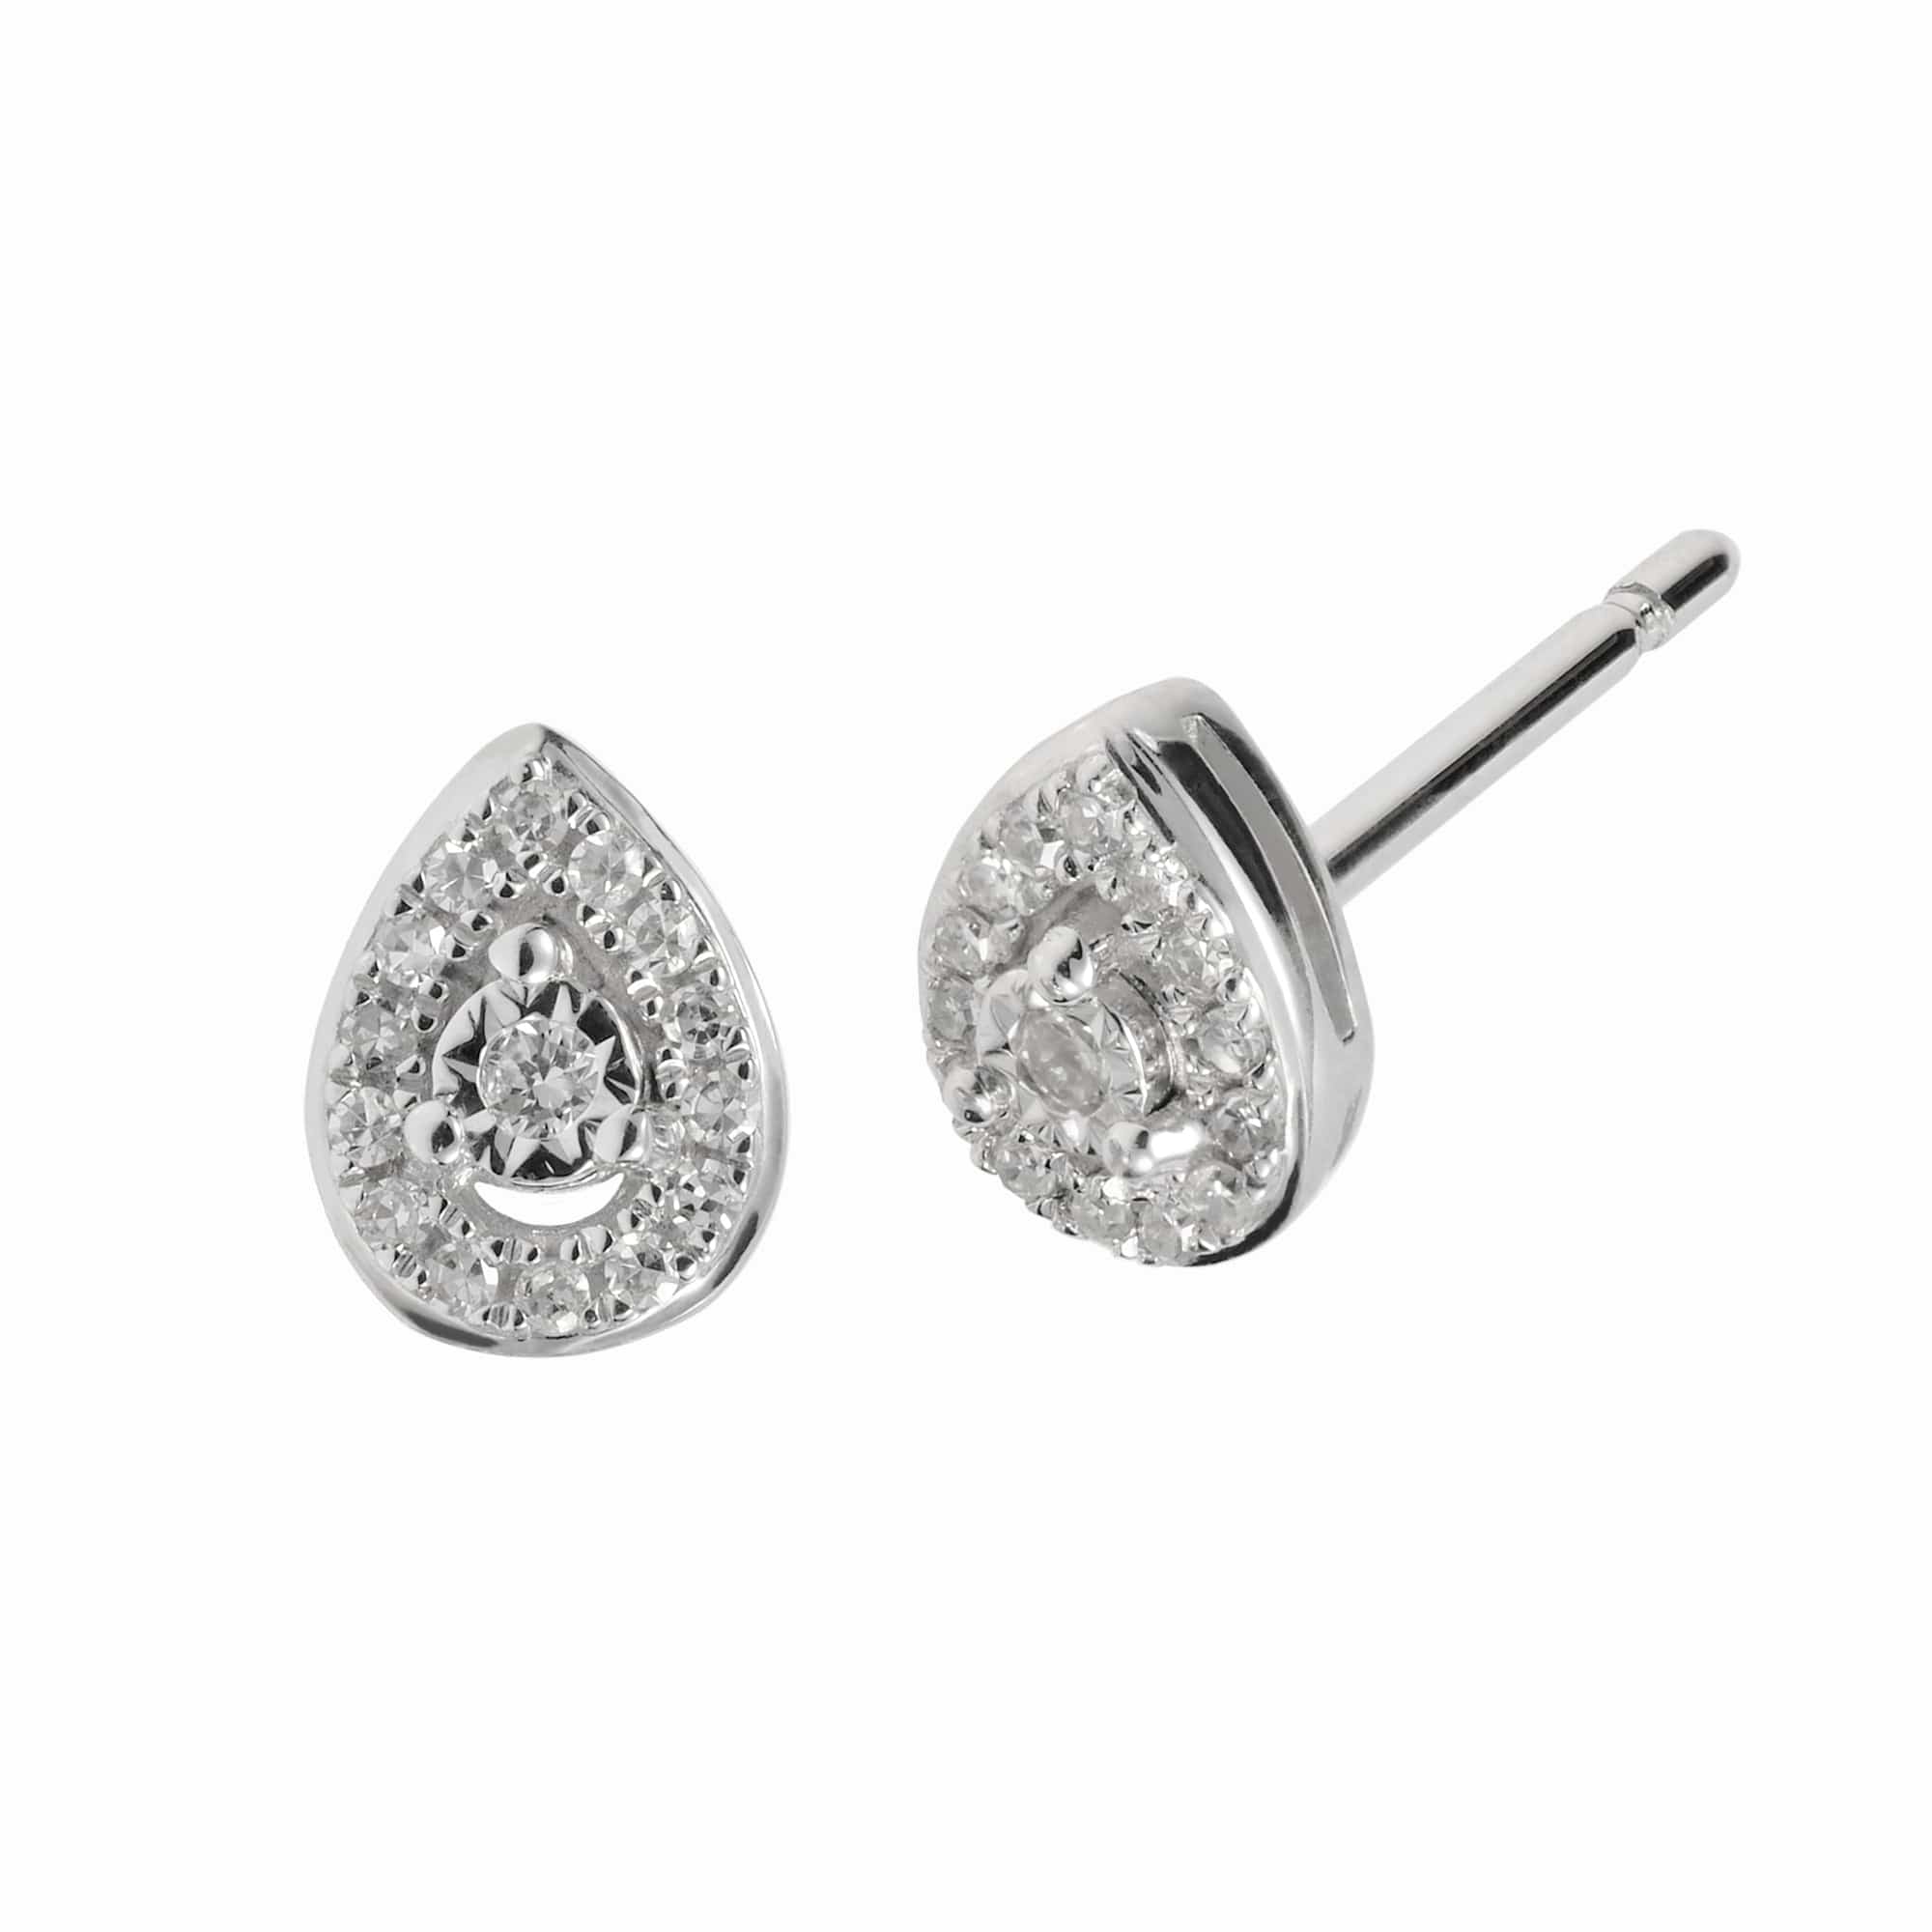 62192E007. Gemondo Women 9ct White Gold Pear Drop Diamond Stud Earrings 1